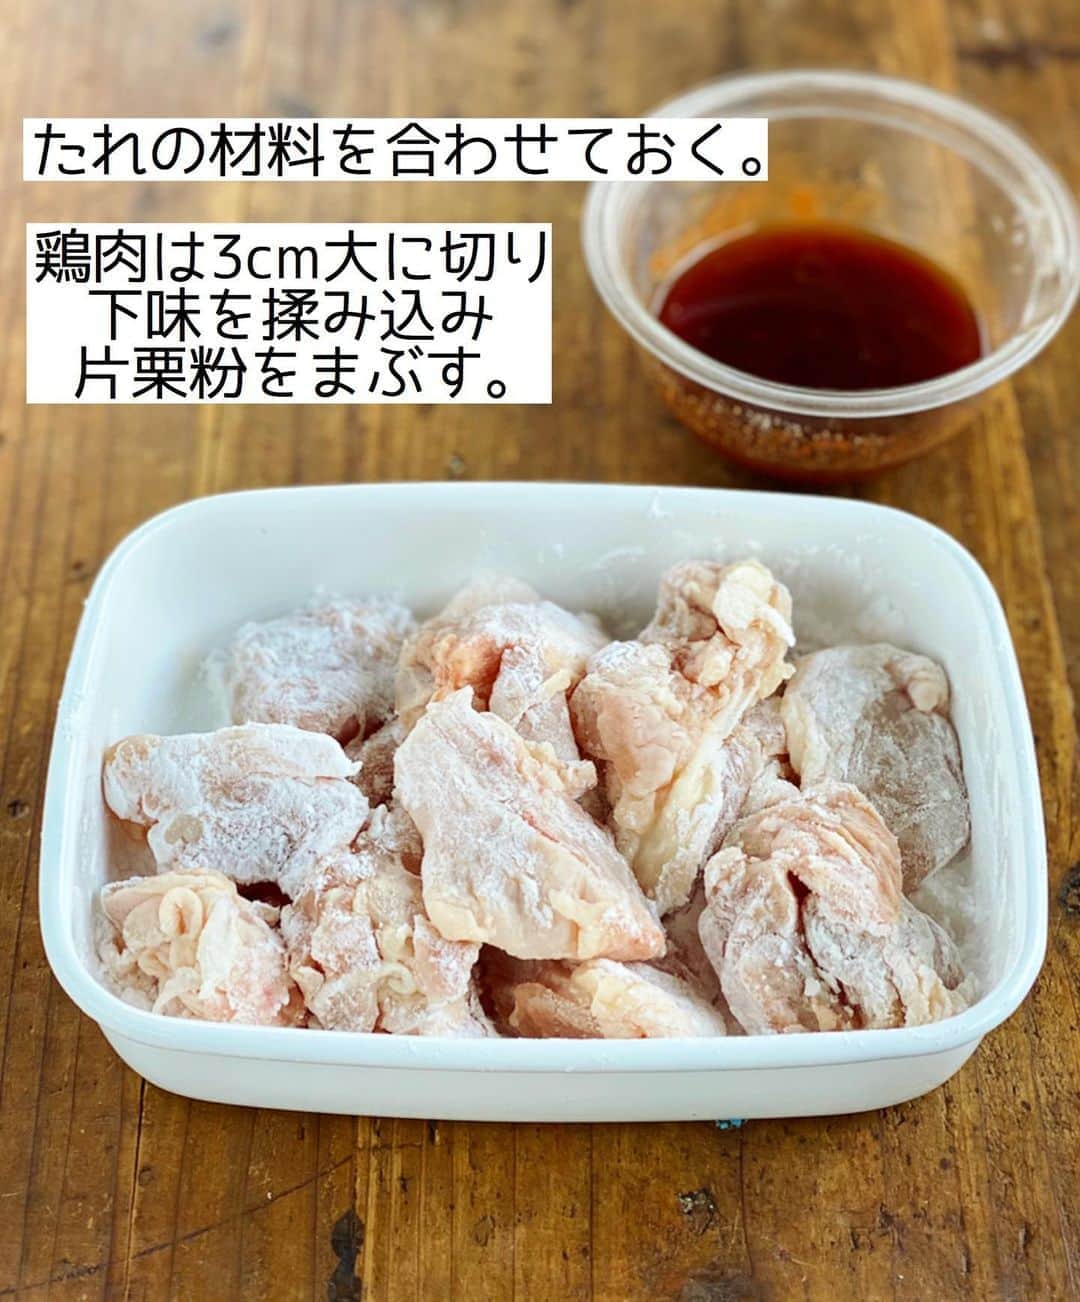 Mizuki【料理ブロガー・簡単レシピ】さんのインスタグラム写真 - (Mizuki【料理ブロガー・簡単レシピ】Instagram)「・﻿ 【レシピ】ーーーーーーーーーーーーー﻿ ♡揚げずに簡単！ヤンニョムチキン♡﻿ ーーーーーーーーーーーーーーーーーー﻿ ﻿ ﻿ ﻿ おはようございます(*^^*)﻿ ﻿ 今日ご紹介させていただくのは﻿ 揚げずに作れるヤンニョムチキン♡﻿ カリッと焼いたチキンに﻿ 甘辛だれが相性抜群！！﻿ 焼いてたれをからめるだけの﻿ 超〜簡単レシピです(*´艸`)﻿ ﻿ 6年前にブログアップ済みですが﻿ 今回ブラッシュアップしましたよ♩﻿ これとってもおすすめなので﻿ 是非お試し下さいね(*^^*)﻿ ﻿ ﻿ ﻿ ーーーーーーーーーーーーーーーーーーーー﻿ 【2人分】﻿ 鶏もも肉...大1枚(300g)﻿ ●塩こしょう...少々﻿ ●酒...大1/2﻿ 片栗粉...適量﻿ サラダ油...大3﻿ ☆コチュジャン・ケチャップ・砂糖・みりん...各大1﻿ ☆醤油・ごま油...各大1/2﻿ ☆にんにくチューブ...3cm﻿ ごま...適量﻿ ﻿ 1.鶏肉は3cm大に切り、●を揉み込み片栗粉をまぶす。☆は合わせておく。﻿ 2.フライパンにサラダ油を中火で熱し、鶏肉を焼く。焼き色が付いたら裏返し、フタをして弱めの中火で3分蒸し焼きにする。﻿ 3.余分な油を拭き取り、☆を加えて煮からめる。仕上げにごまを振る。﻿ ーーーーーーーーーーーーーーーーーーーー﻿ ﻿ ﻿ ﻿ 《ポイント》﻿ ♦︎むね肉でも作れます☆全体をフォークで刺して1cm厚さの削ぎ切りにして下さい♩焼き時間は短めでOK！﻿ ﻿ ﻿ ﻿ ﻿ ﻿ ﻿ ﻿ ＿＿＿＿＿＿＿＿＿＿＿＿＿＿＿＿＿＿＿﻿ 📕7刷重版しました📕﻿ 簡単・時短！ 毎日のごはんがラクになる﻿ ✨🦋 【 #Mizukiの今どき和食 】🦋✨﻿ ＿＿＿＿＿＿＿＿＿＿＿＿＿＿＿＿＿＿＿﻿ なるべく少ない材料で﻿ 手間も時間も省きながら﻿ 簡単にできるおいしい和食レシピ♩﻿ 簡単に失敗なくマスターできる一冊で﻿ もっと気軽に、カジュアルに﻿ 和食を楽しんで下さいね(*^^*)﻿ ＿＿＿＿＿＿＿＿＿＿＿＿＿＿＿＿＿＿＿﻿ ﻿ ﻿ ﻿ ＿＿＿＿＿＿＿＿＿＿＿＿＿＿＿＿＿＿＿﻿ 🎀6刷重版しました🎀﻿ 混ぜて焼くだけ。はじめてでも失敗しない！﻿ 【#ホットケーキミックスのお菓子 】﻿ ﻿ 一冊まるっとホケミスイーツ♩﻿ 普段のおやつから﻿ 特別な日にも使えるレシピを﻿ この一冊に詰め込みました(*^^*)﻿ ホットケーキミックスを使えば﻿ 簡単に本格的なお菓子が作れますよ♡﻿ ＿＿＿＿＿＿＿＿＿＿＿＿＿＿＿＿＿﻿ ﻿ ﻿ ﻿ ﻿ ￣￣￣￣￣￣￣￣￣￣￣￣￣￣￣￣￣￣﻿ レシピを作って下さった際や﻿ レシピ本についてのご投稿には﻿ タグ付け( @mizuki_31cafe )して﻿ お知らせいただけると嬉しいです😊💕﻿ ＿＿＿＿＿＿＿＿＿＿＿＿＿＿＿＿＿＿﻿ ﻿ ﻿ ﻿ ﻿ ﻿ #ヤンニョムチキン#鶏肉#甘辛#韓国料理﻿ #Mizuki#簡単レシピ#時短レシピ#節約レシピ#料理#レシピ#料理#レシピ#フーディーテーブル#マカロニメイト#おうちごはん#デリスタグラマー#料理好きな人と繋がりたい#食べ物#料理記録#おうちごはんlover#写真好きな人と繋がりたい#foodpic#cooking#recipe#lin_stagrammer#foodporn#yummy#ヤンニョムチキンm」8月19日 7時05分 - mizuki_31cafe